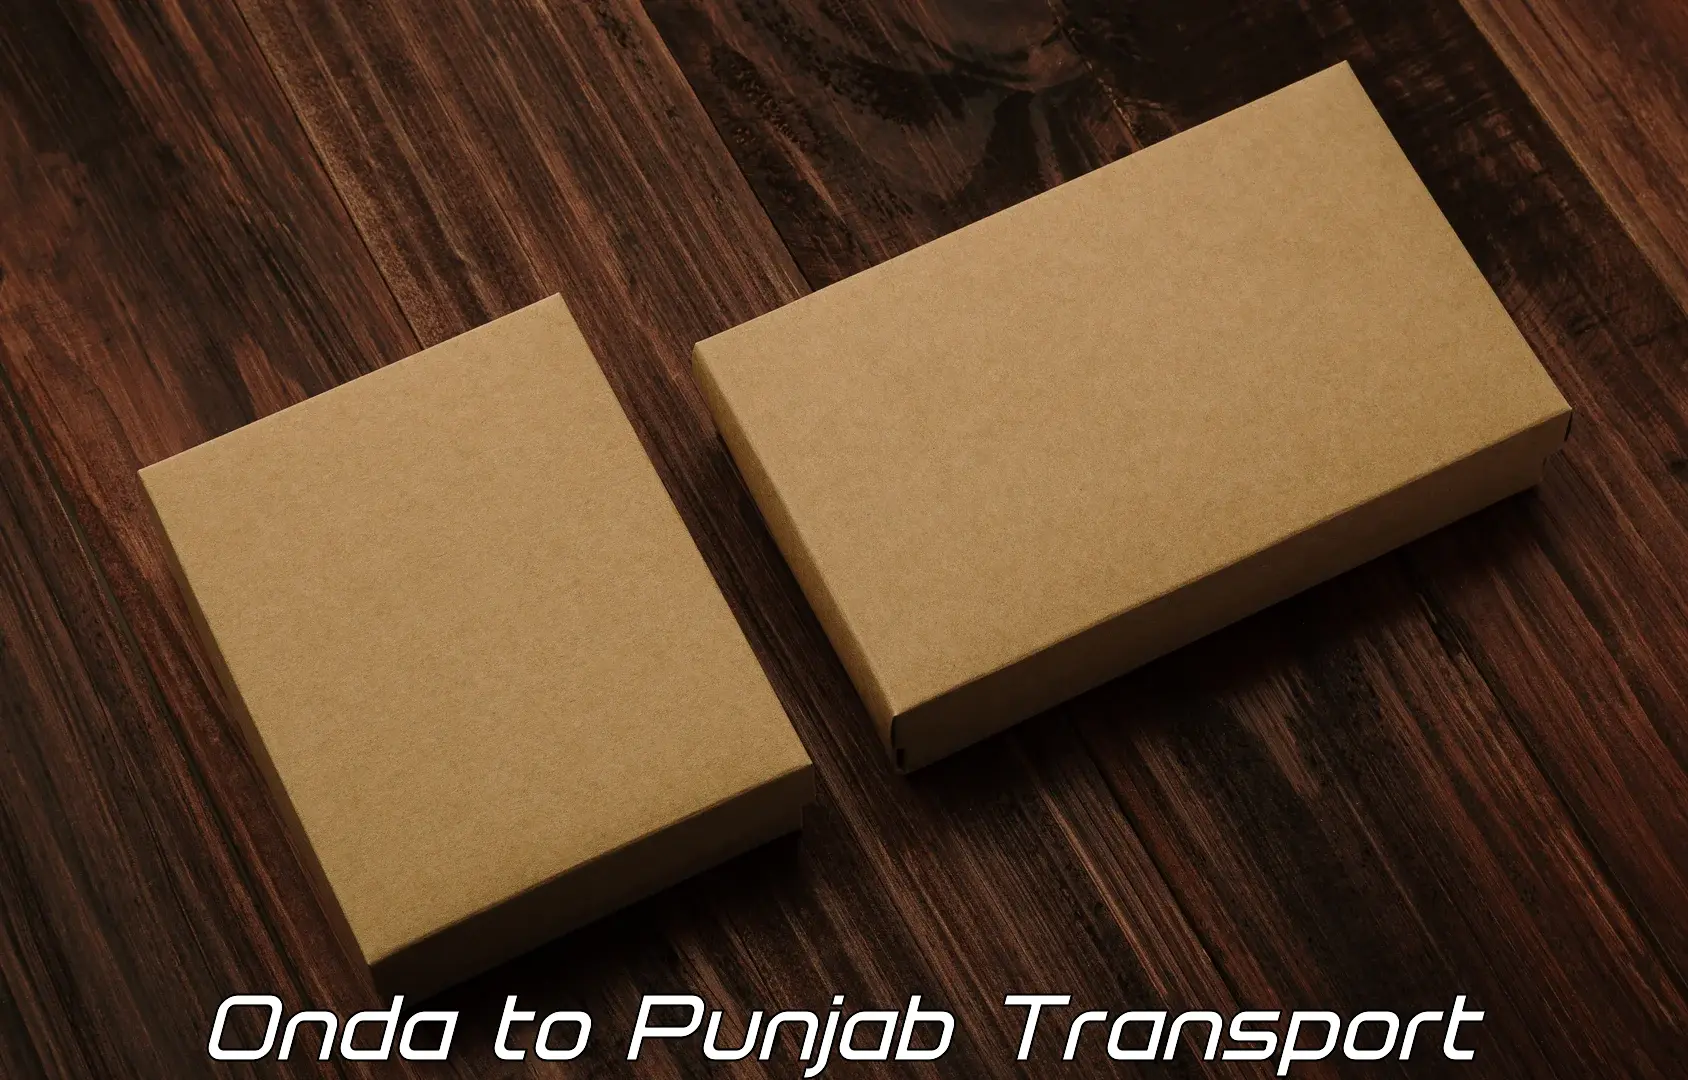 Online transport booking Onda to Punjab